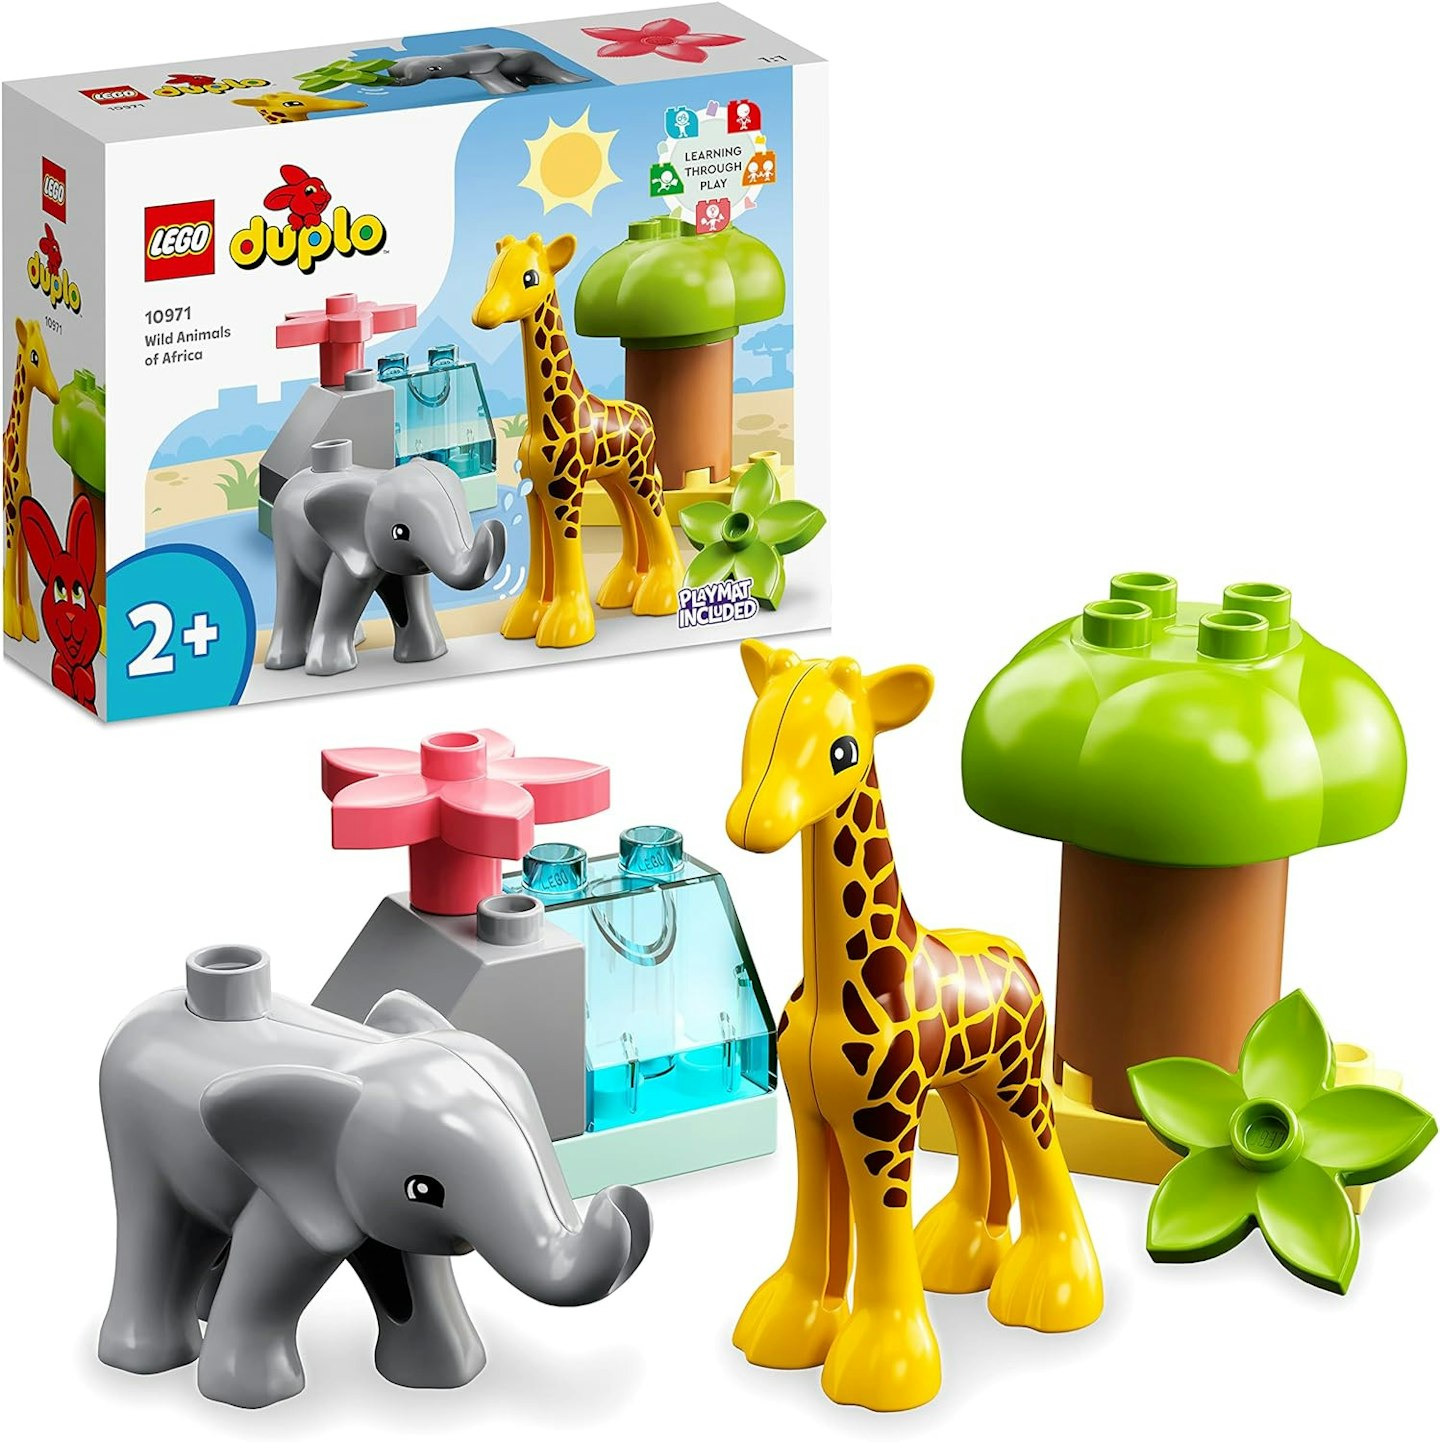 LEGO Duplo - Animal toys